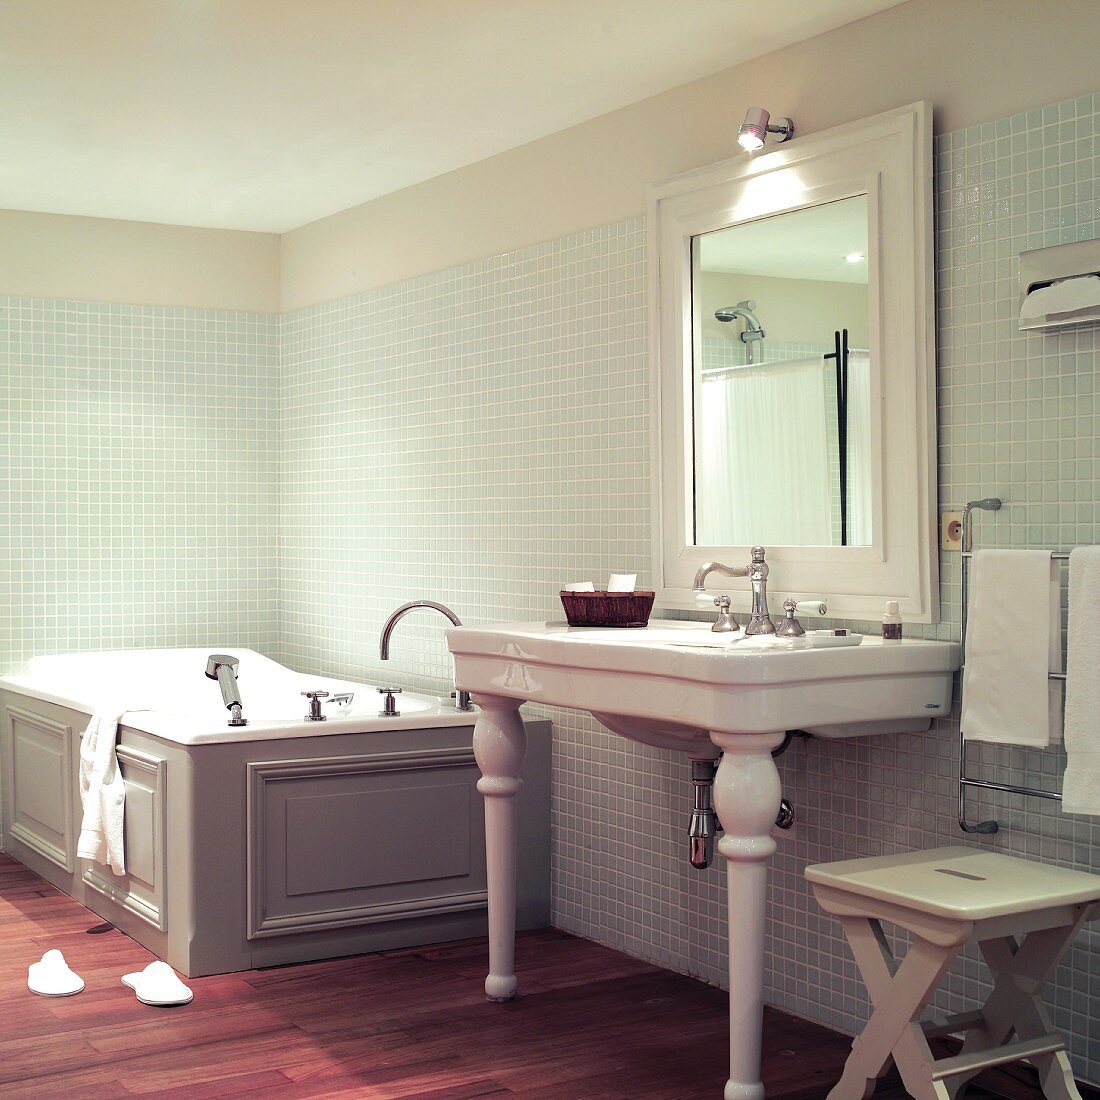 Vintage Bad: Waschtisch mit Keramikfüßen neben holzverkleideter Badewanne an Wand mit Mosaikfliesen